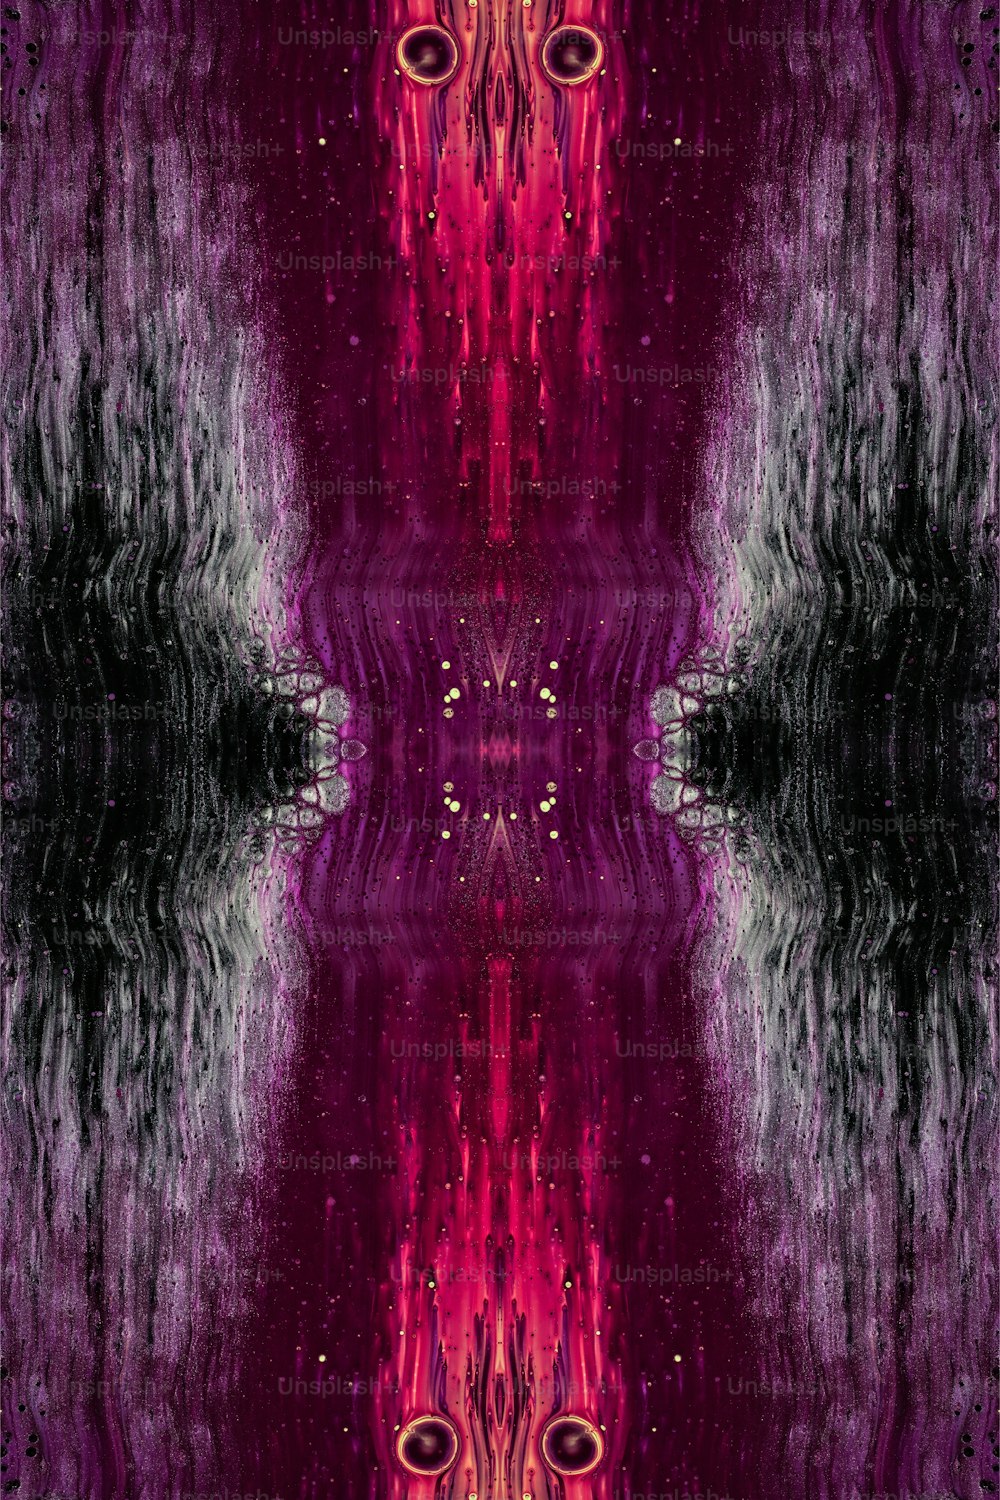 Un'immagine astratta di uno sfondo rosso e viola